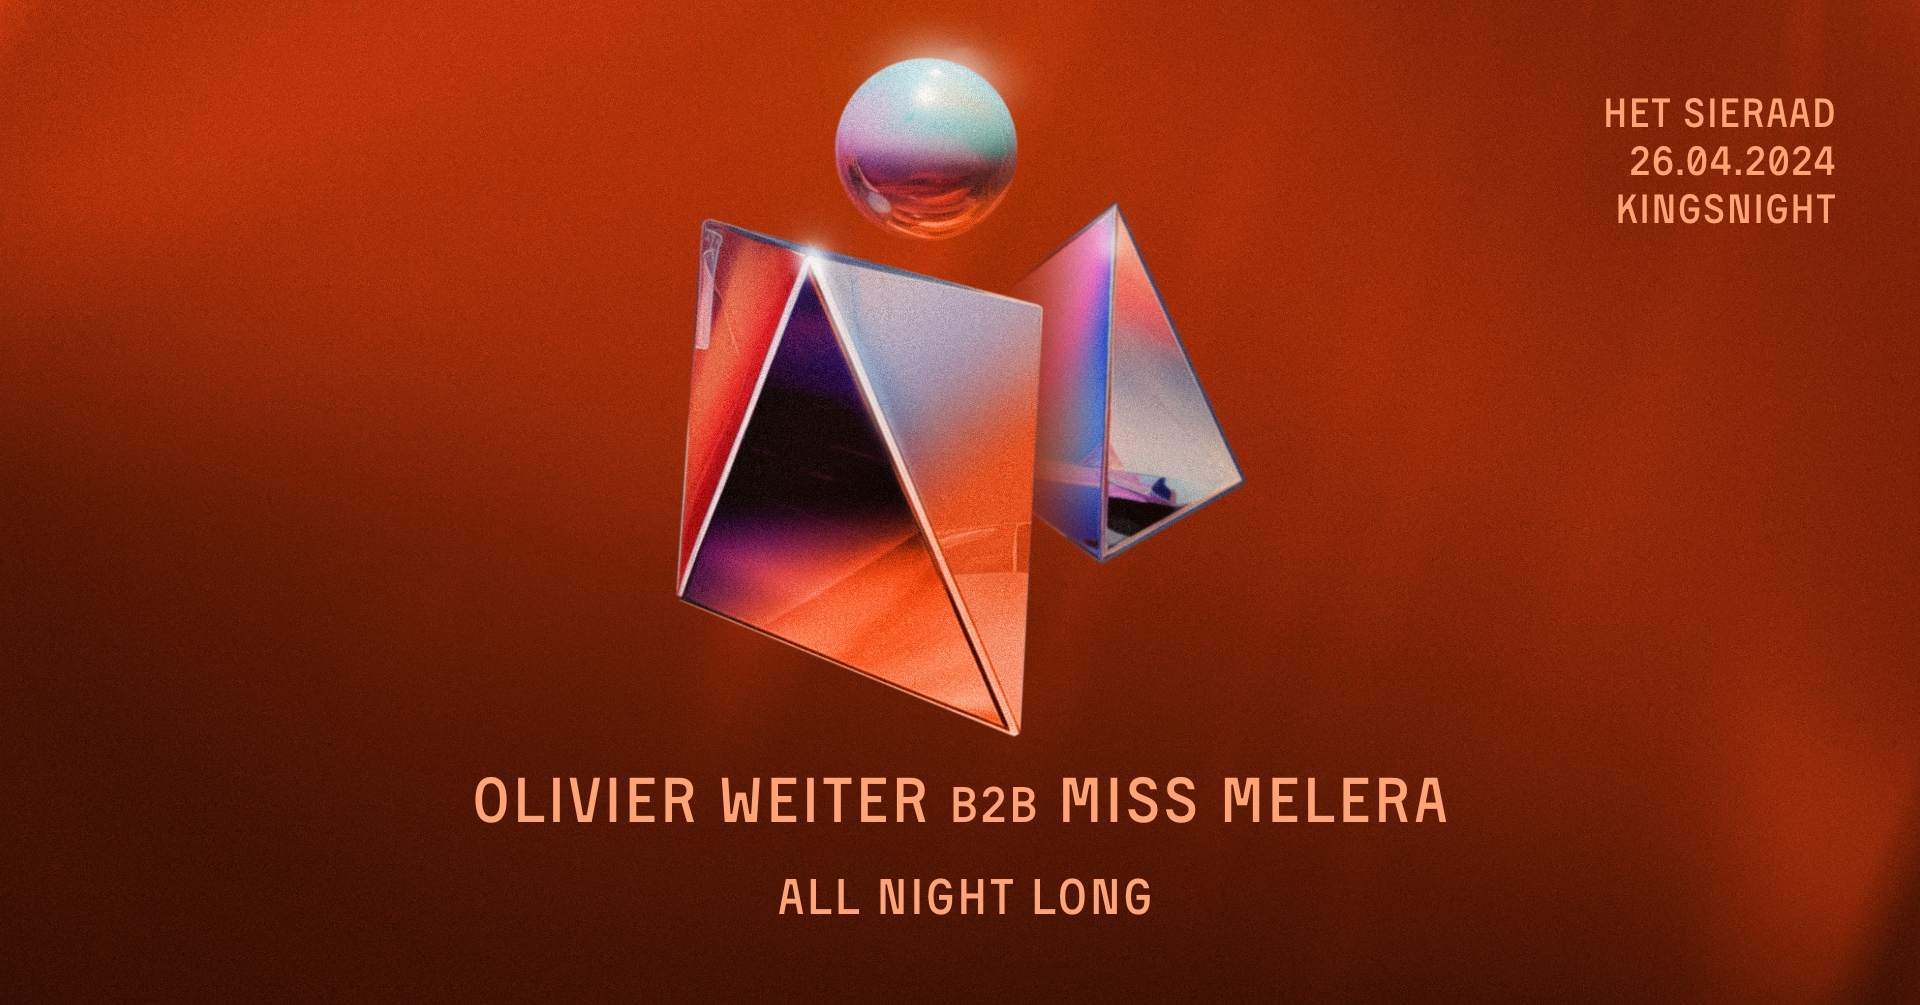 Kingsnight - Olivier Weiter b2b Miss Melera - フライヤー表